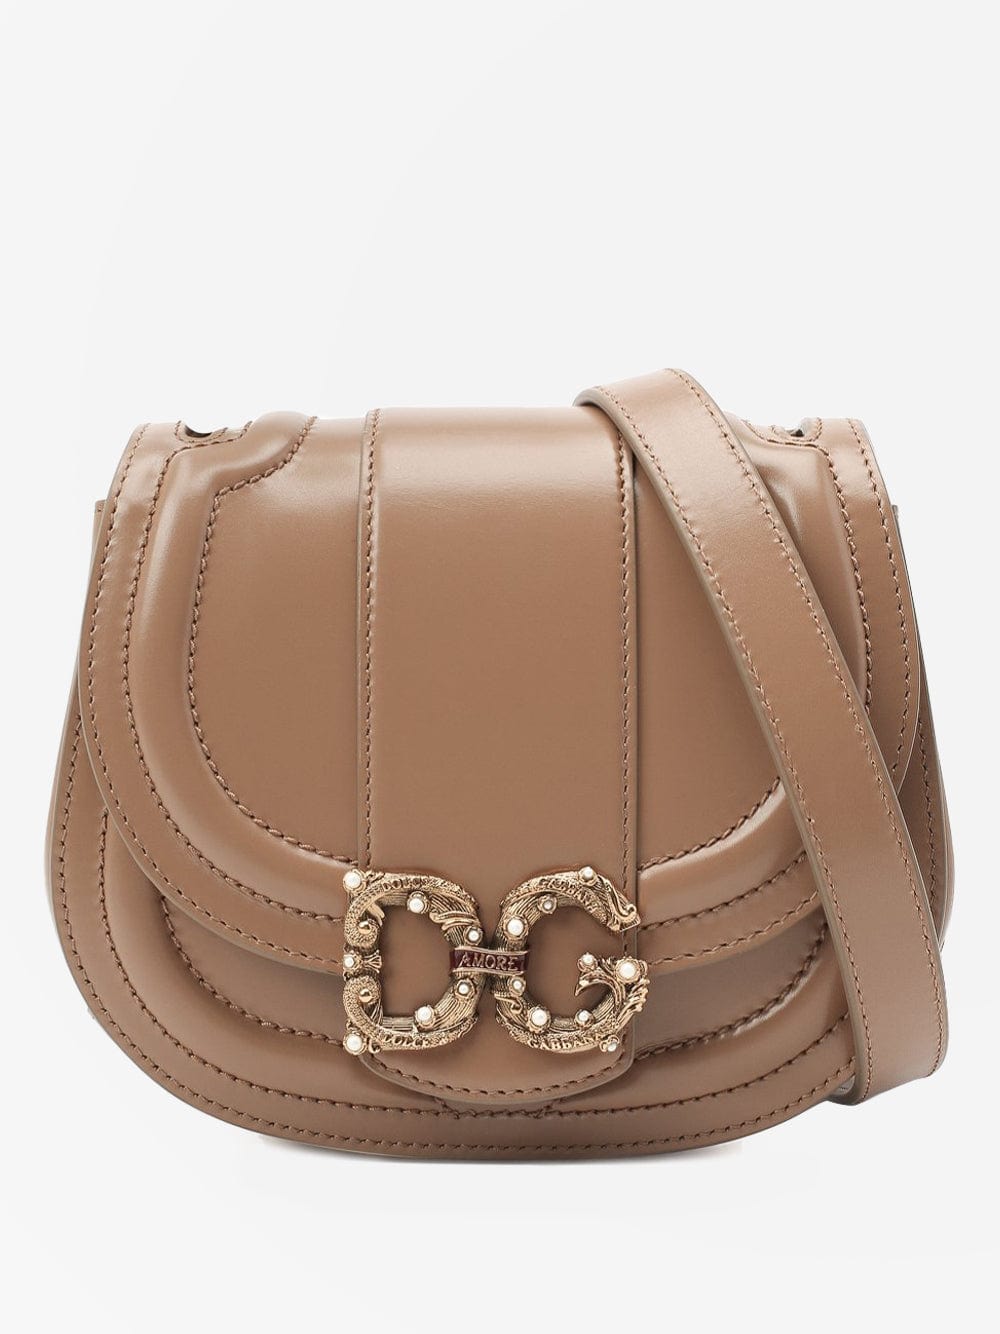 Dolce & Gabbana DG Amore Small Shoulder Bag